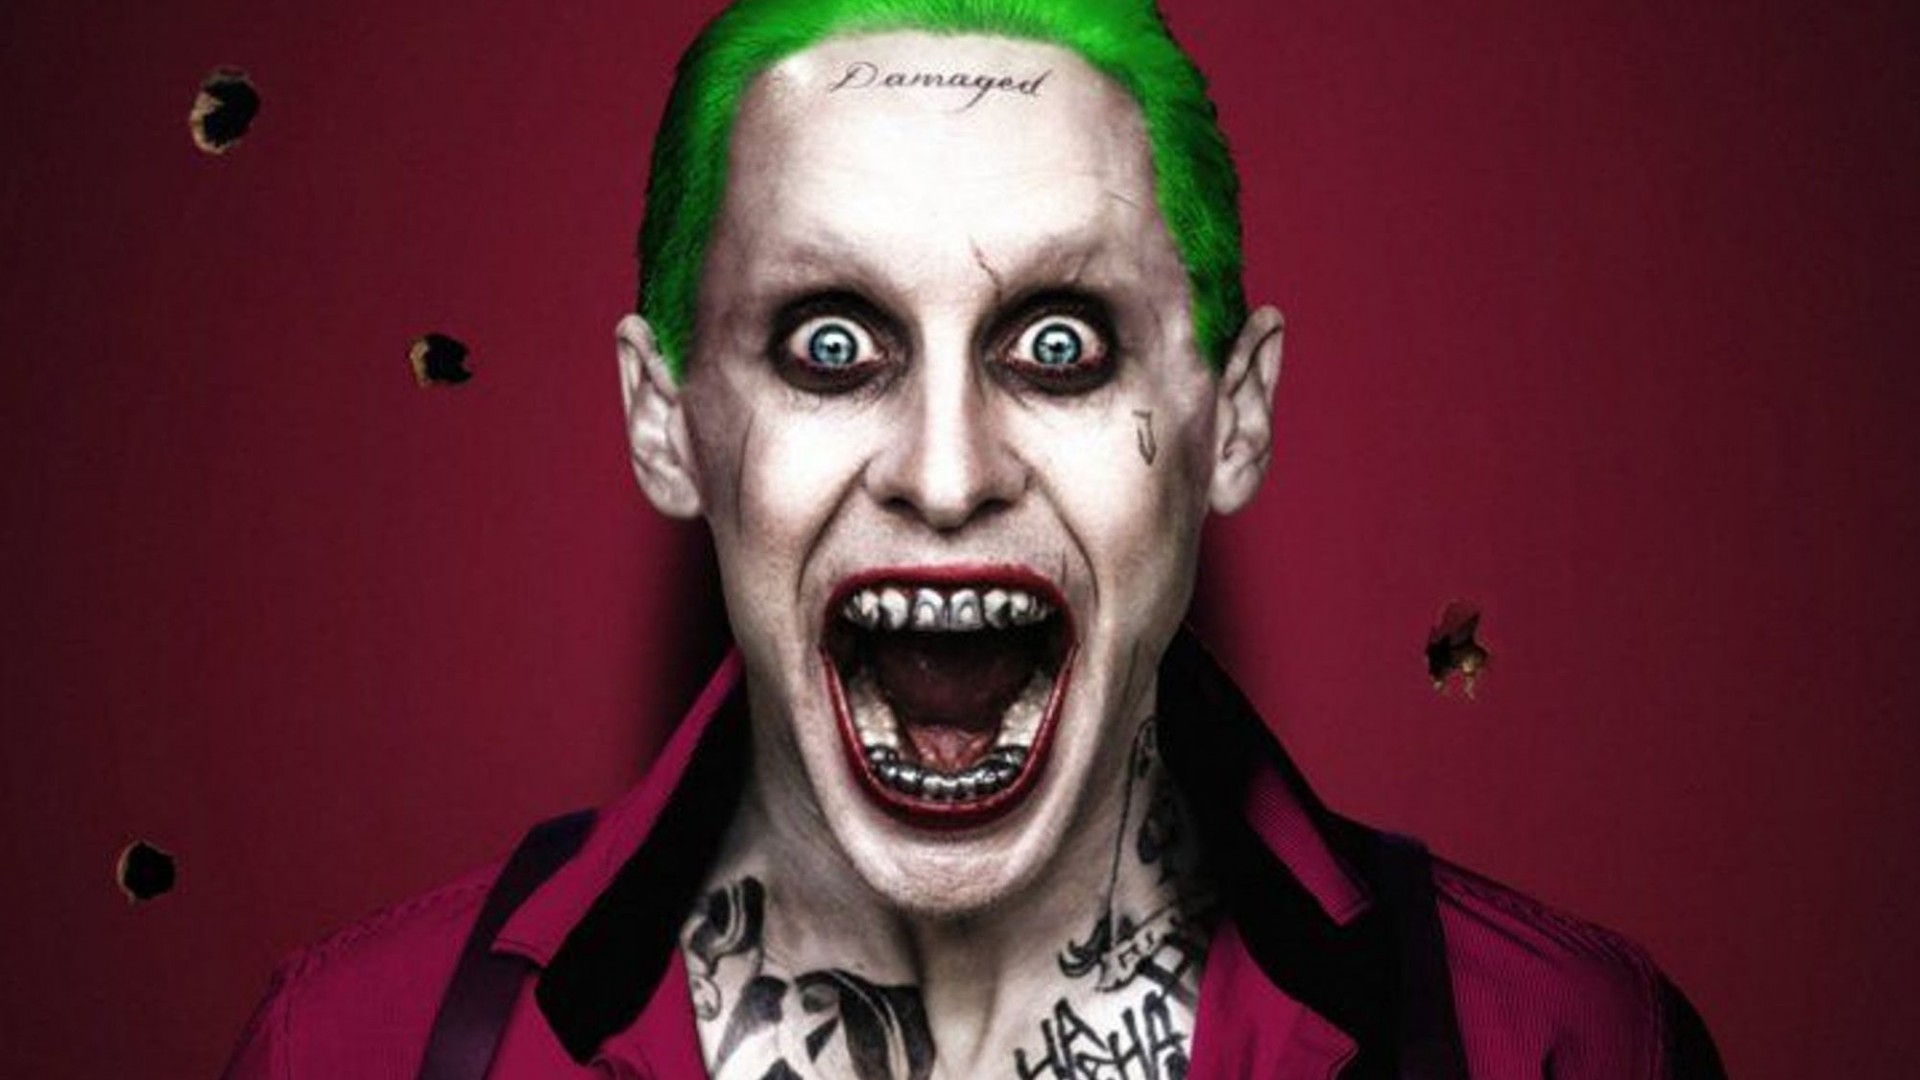 Jared Leto Joker Wallpaper (78+ images)